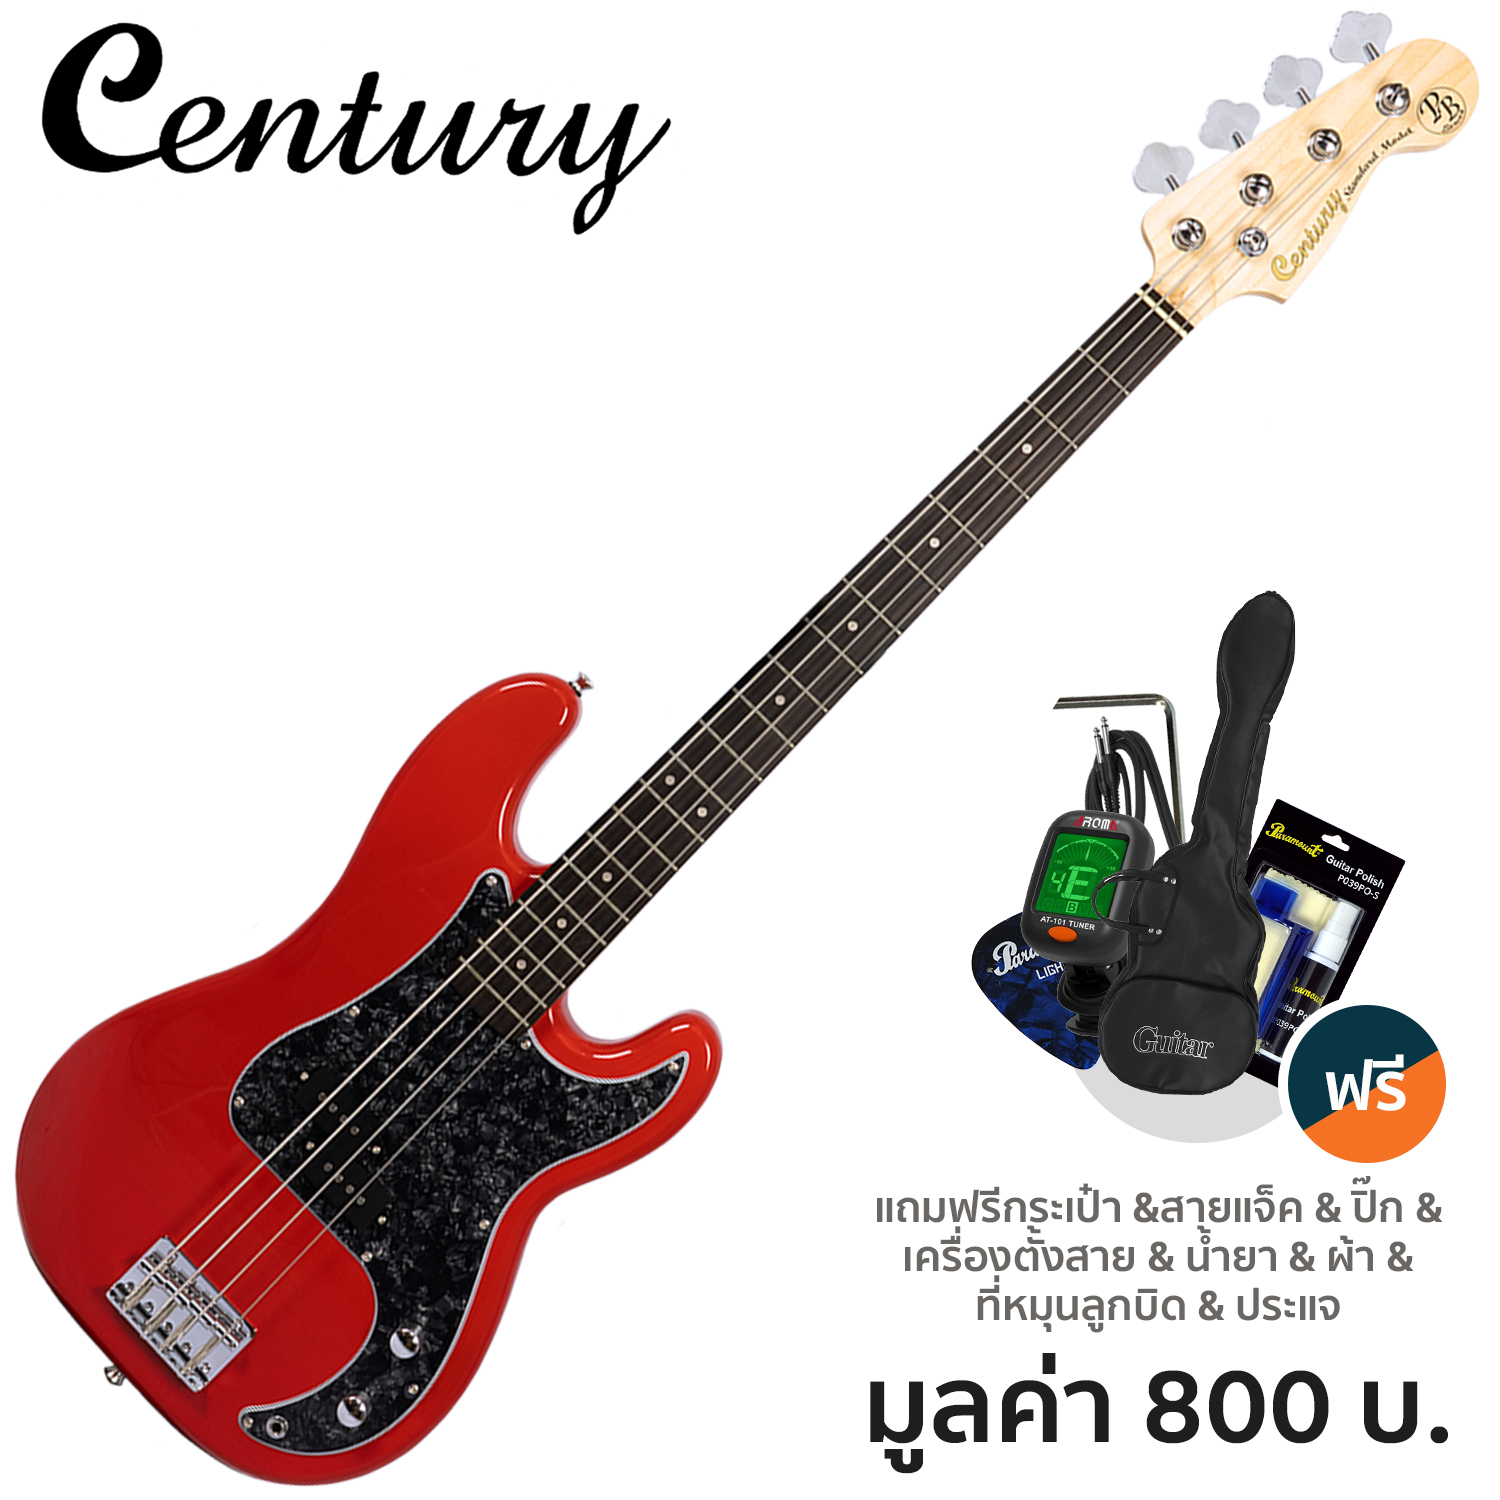 Century CB-22 PJ Bass กีตาร์เบส 4 สาย ทรง Precision Jazz 22 เฟรต ไม้ฮาร์ดวู้ด + แถมฟรีกระเป๋าเบส & จูนเนอร์ & ชุดทำความสะอาด & สายแจ็ค & ปิ๊ก